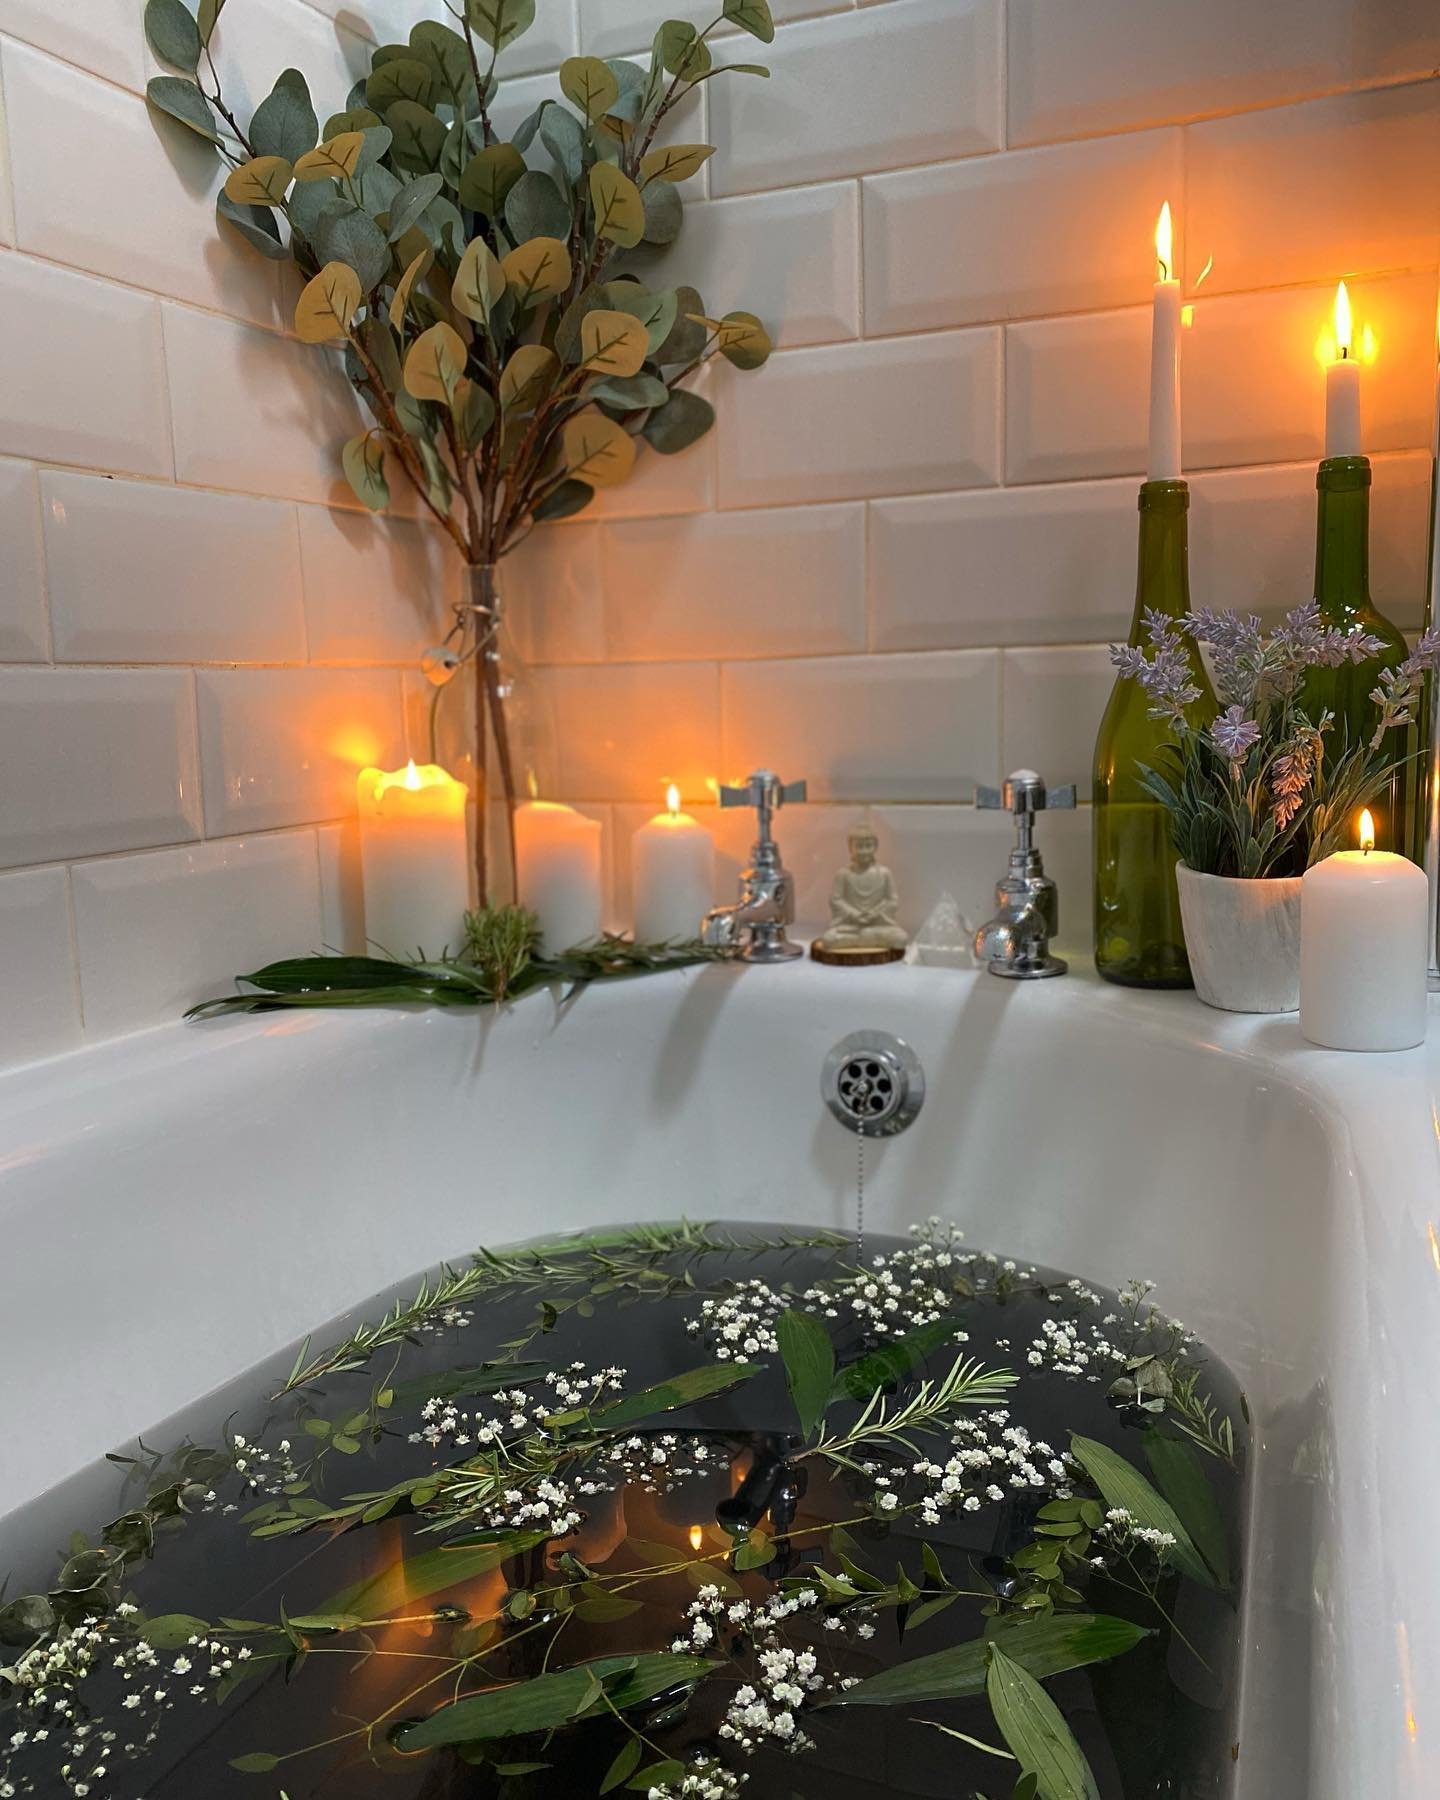 Elizabeth Dickson - banhos de ervas - banhos de ervas - Verão - Pinterest - https://stealthelook.com.br